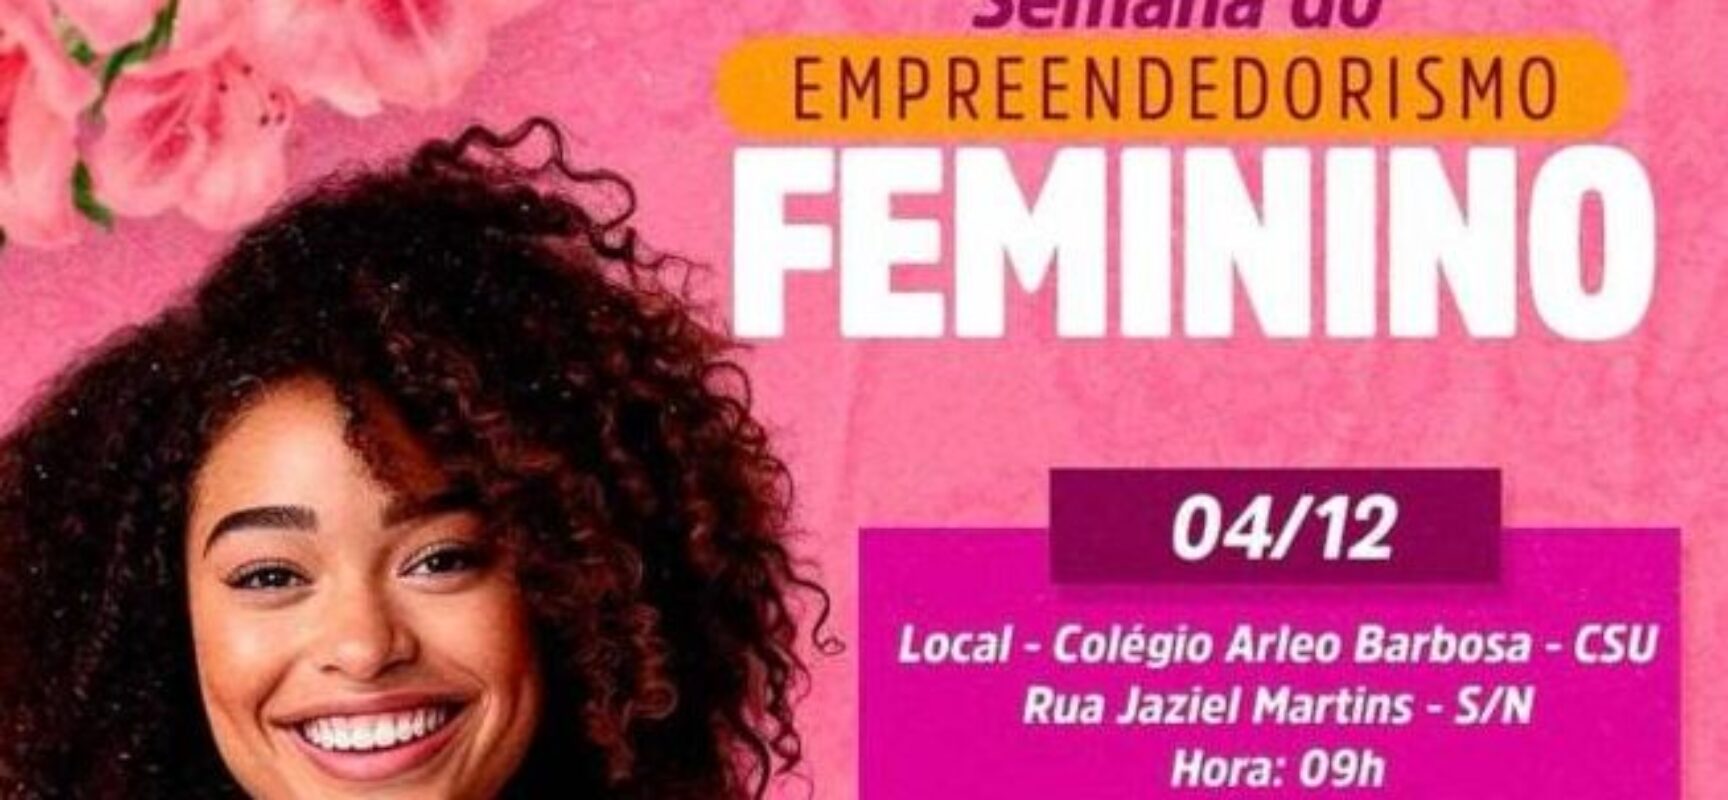 Ilhéus realiza Semana do Empreendedorismo Feminino; confira programação